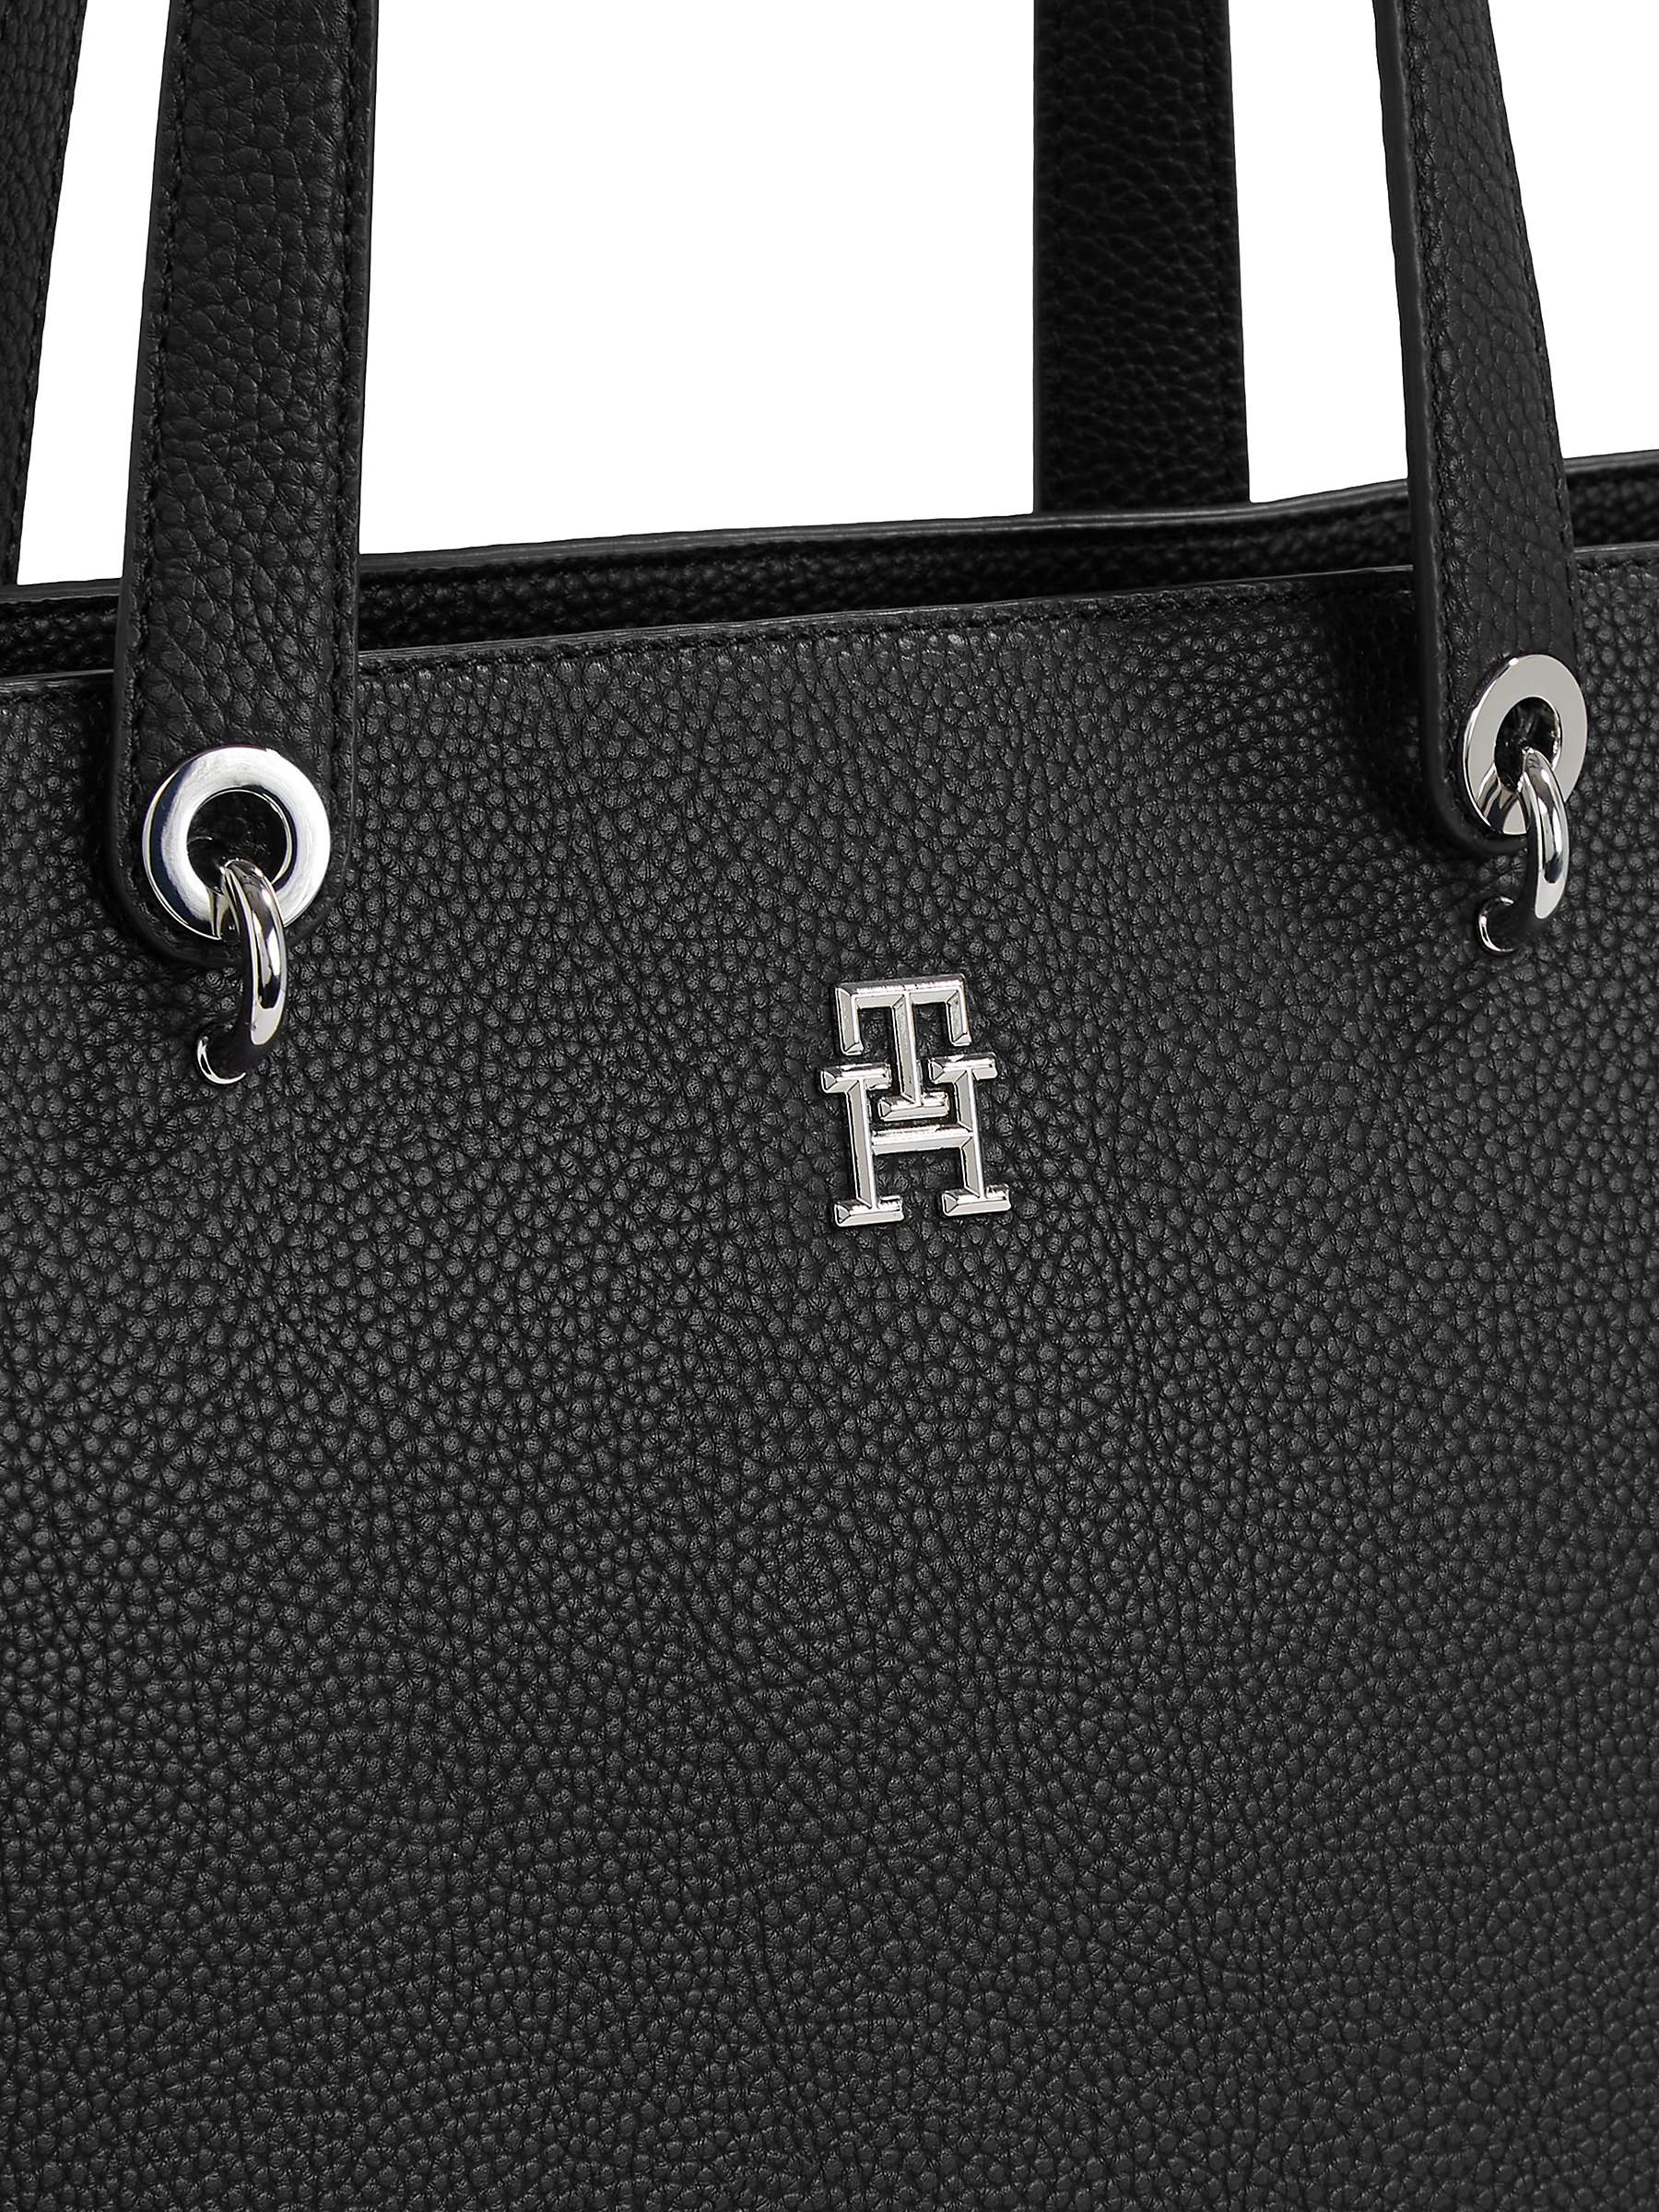 Buy Tommy Hilfiger Emblem Large Tote Bag, Black Online at johnlewis.com